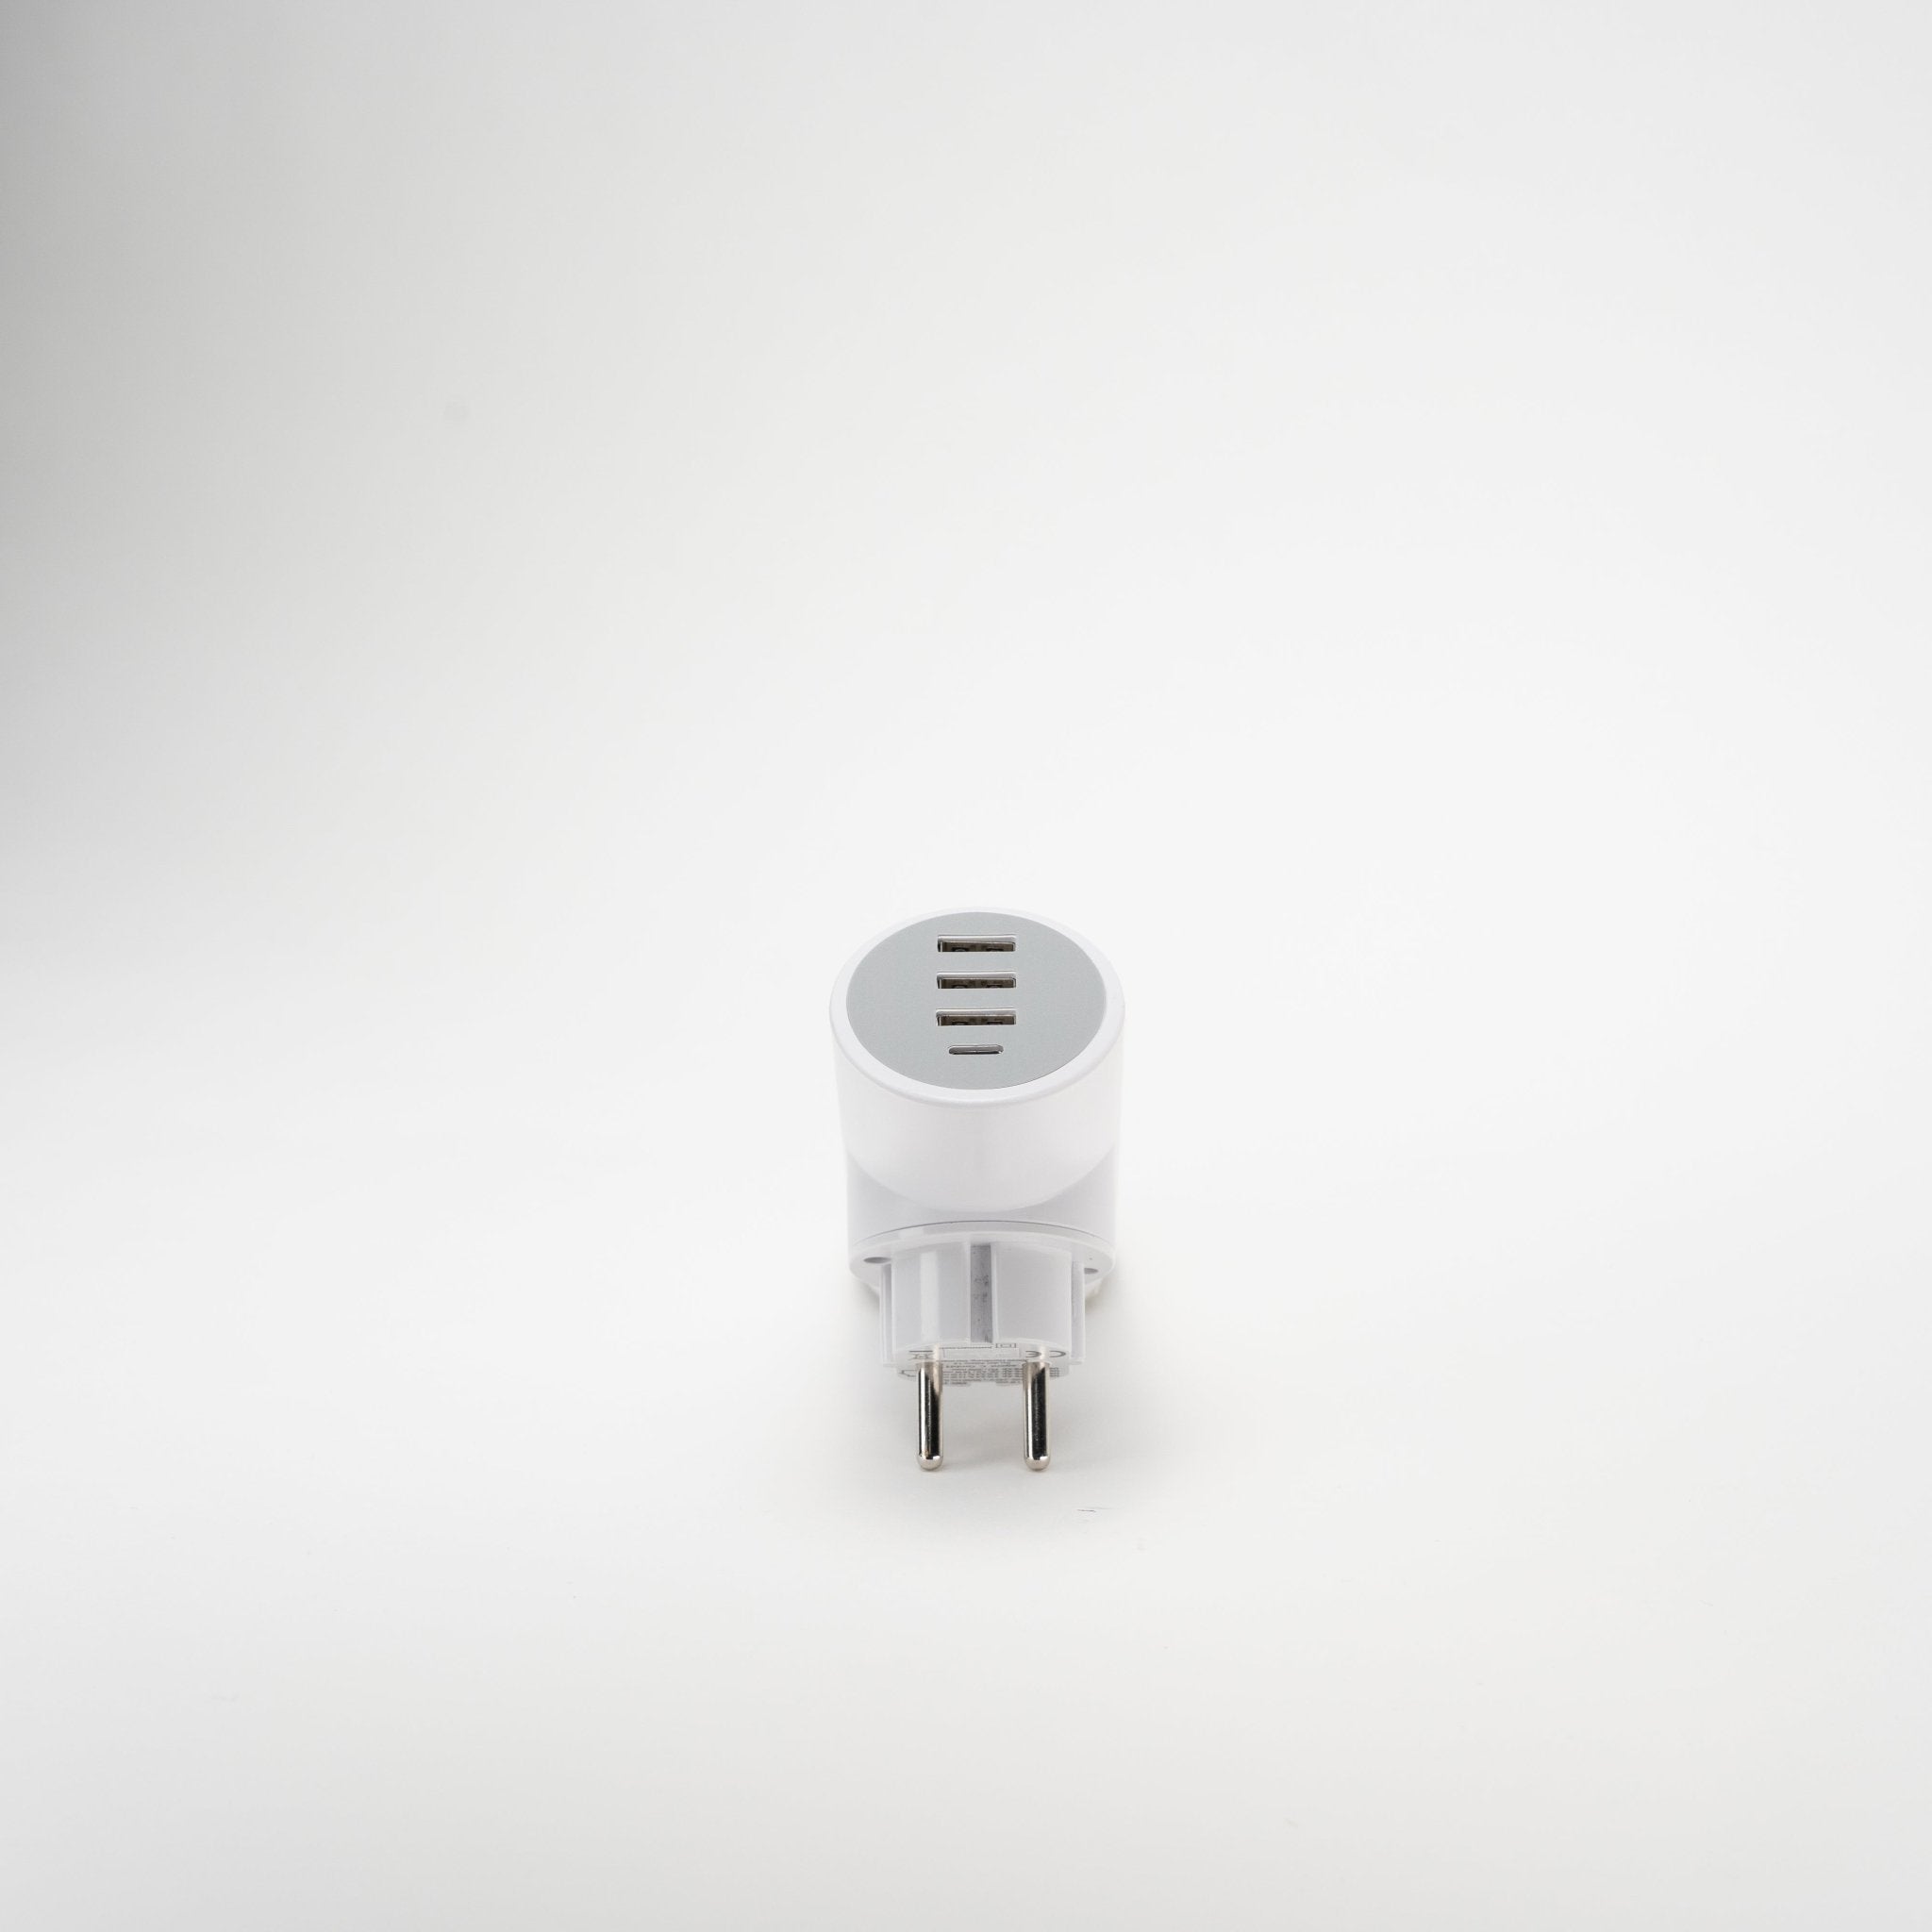 Spotlight Wallcharger mit 4 USB POWER-PORTS | Schnellladegerät | 20 Watt